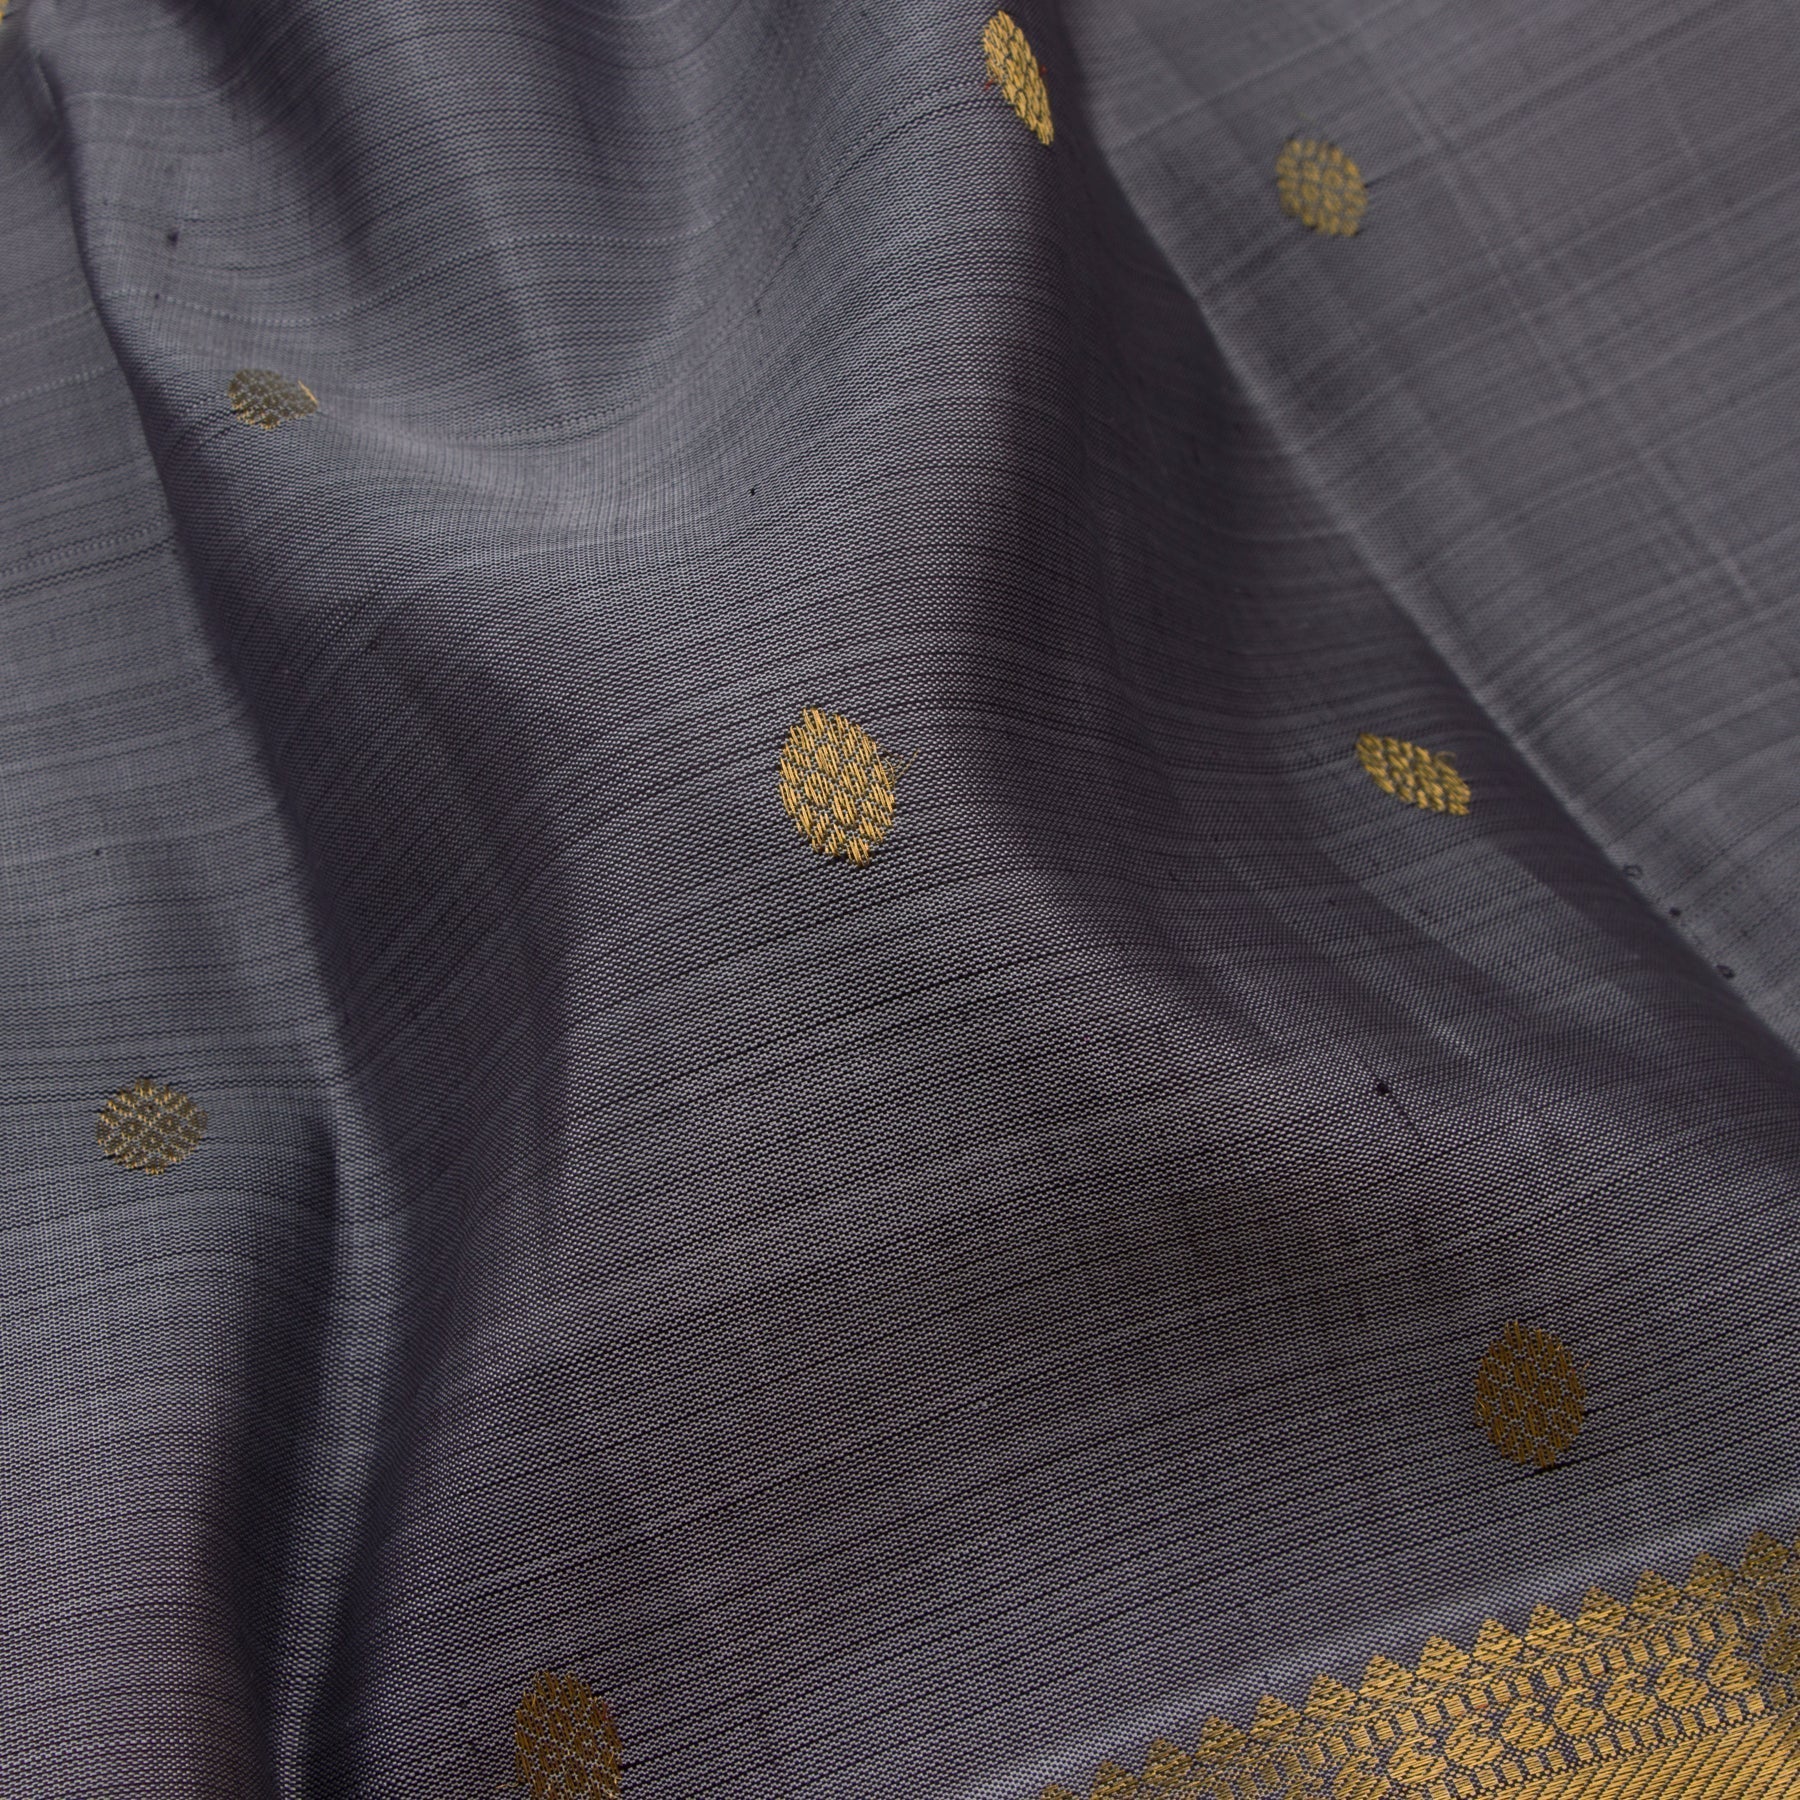 Kanakavalli Kanjivaram Silk Sari 21-599-HS001-04980 - Fabric View